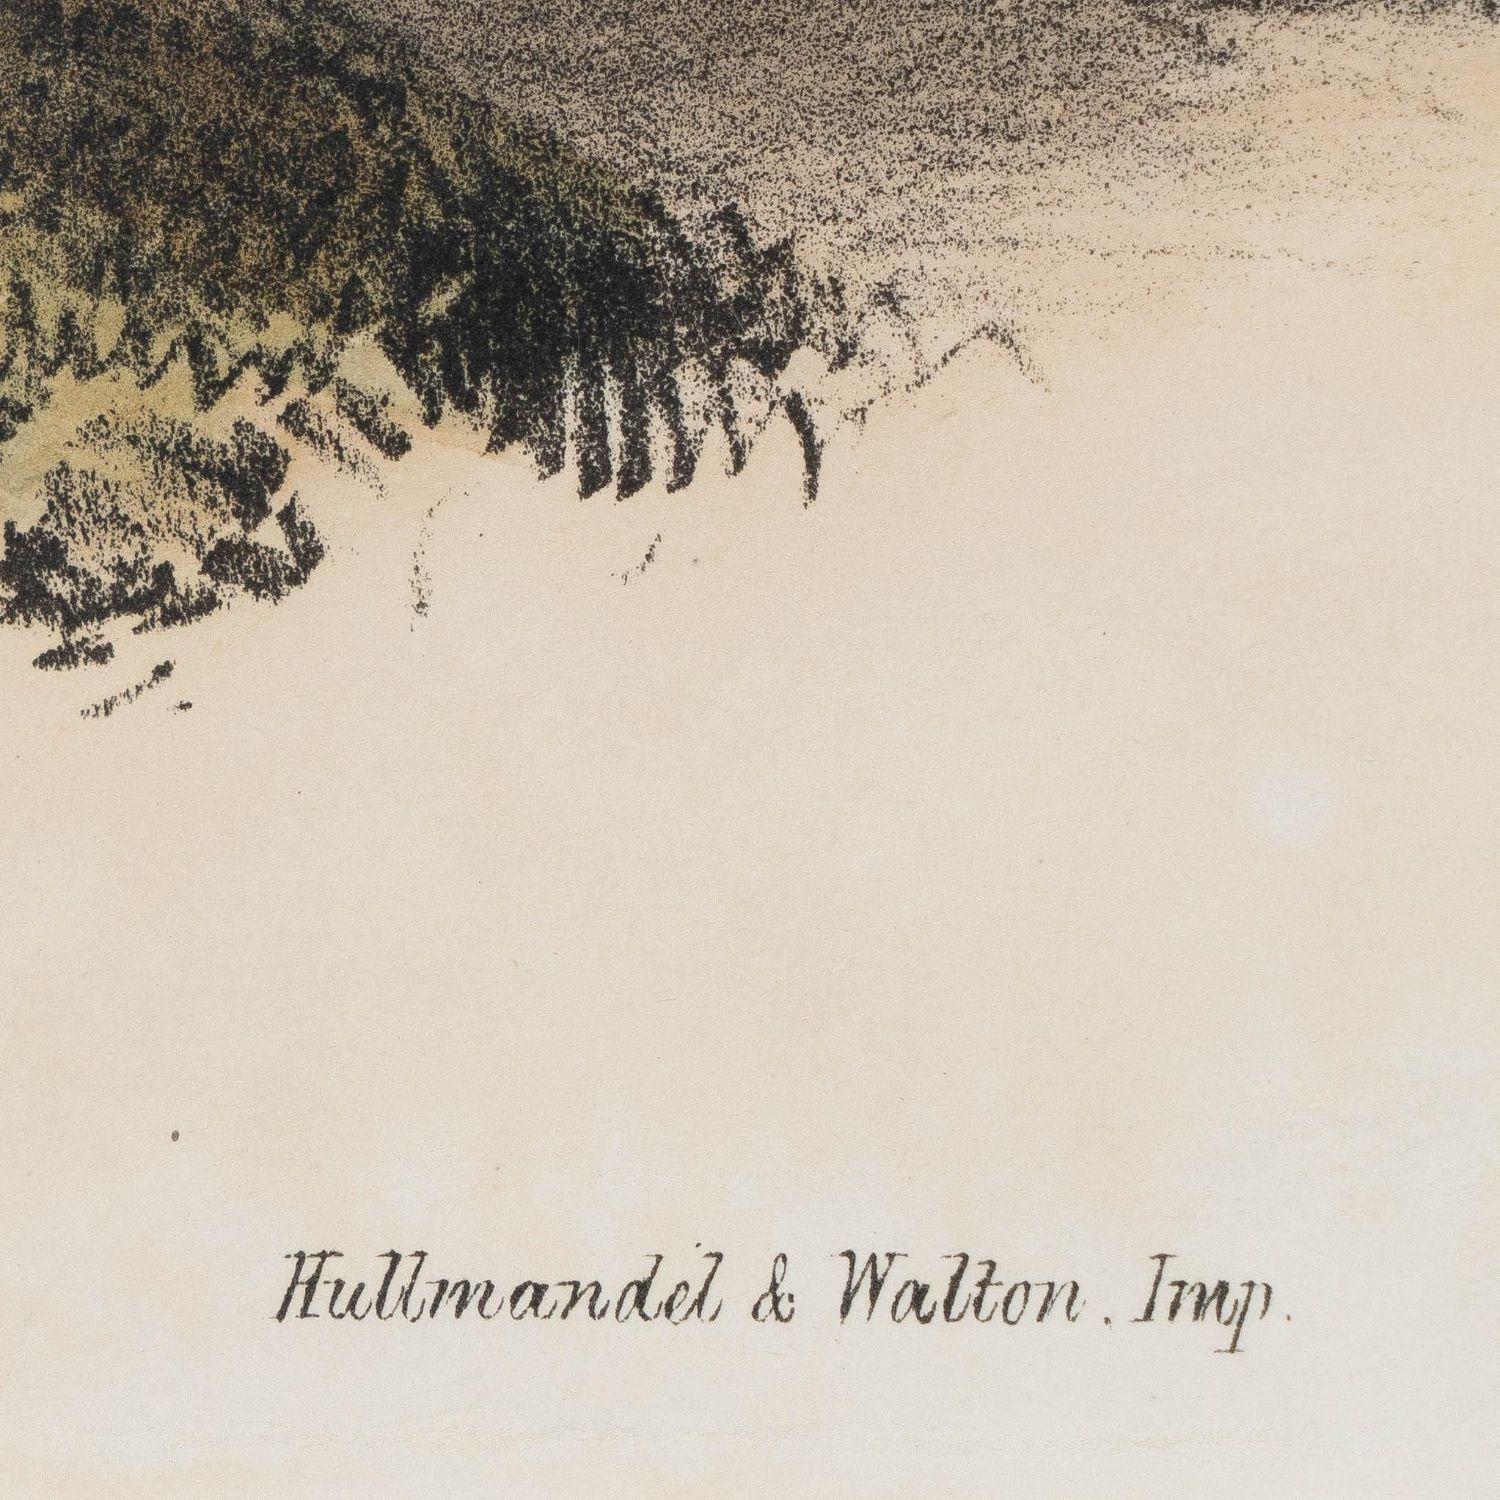 Original handkolorierte Lithographie auf Papier des vielfarbigen japanischen Fasans, mit Begleitnotizen von John Gould. Das Werk wurde auf Stein gezeichnet und von Jos handkoloriert. Wolf und Richter für die J. Gould-Ausgabe von 